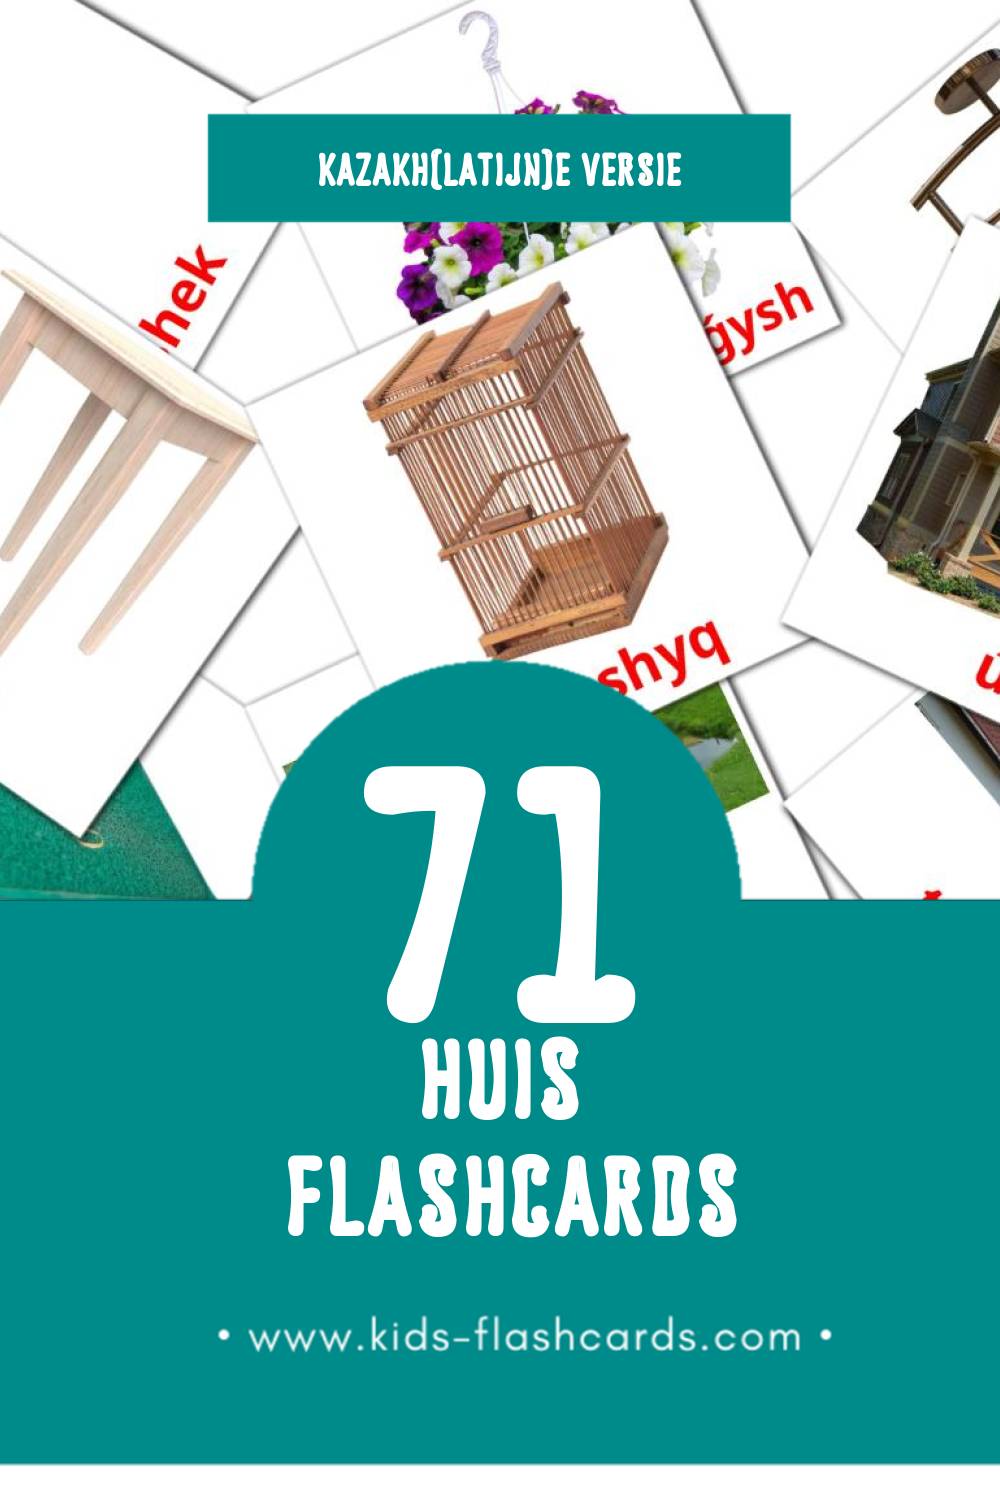 Visuele Úı Flashcards voor Kleuters (71 kaarten in het Kazakh(latijn))